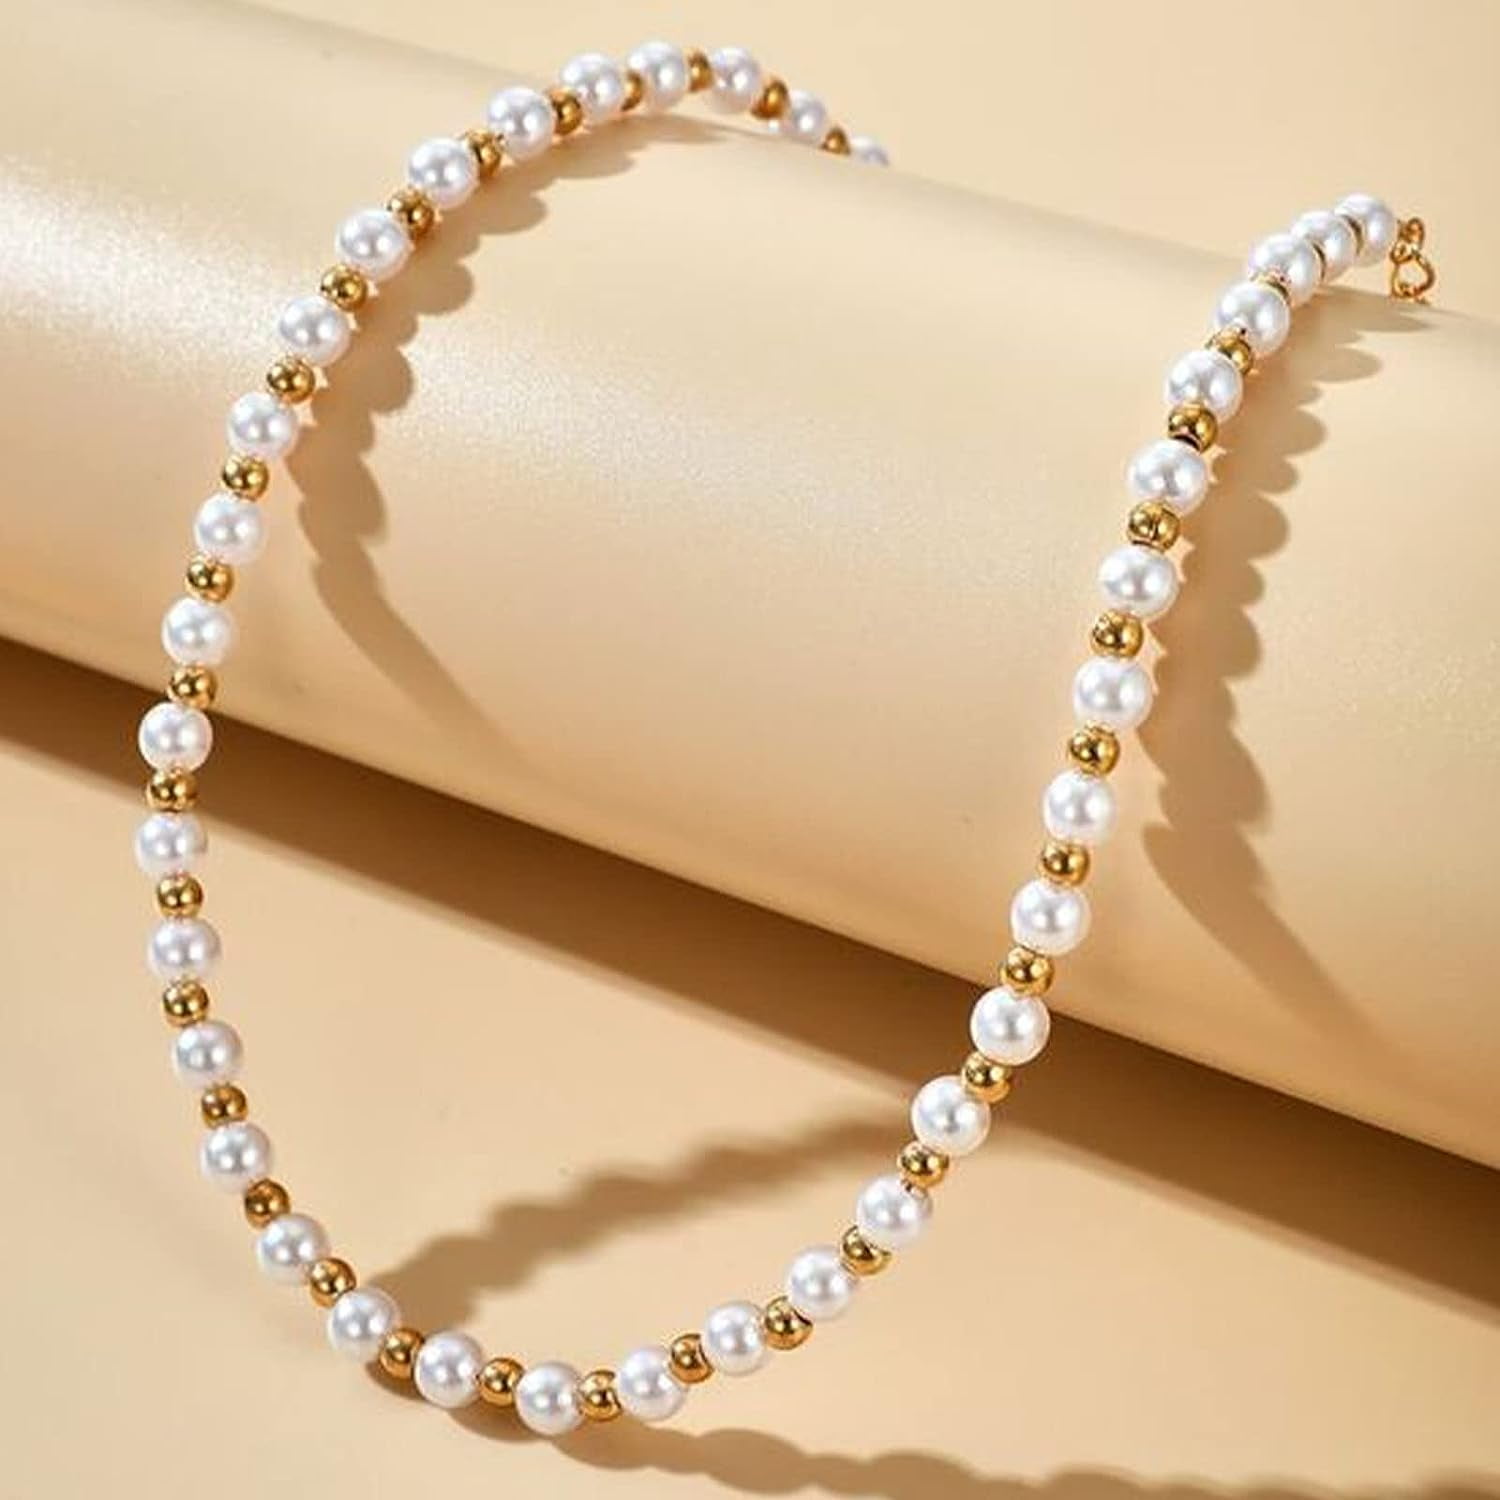 720 PCS Bracelet Making Kit Beads for Bracelets, Friendship Bead Bracelet  Kit, Pearl Beads Gold Beads for Jewelry Making Kit for Adult Bracelets